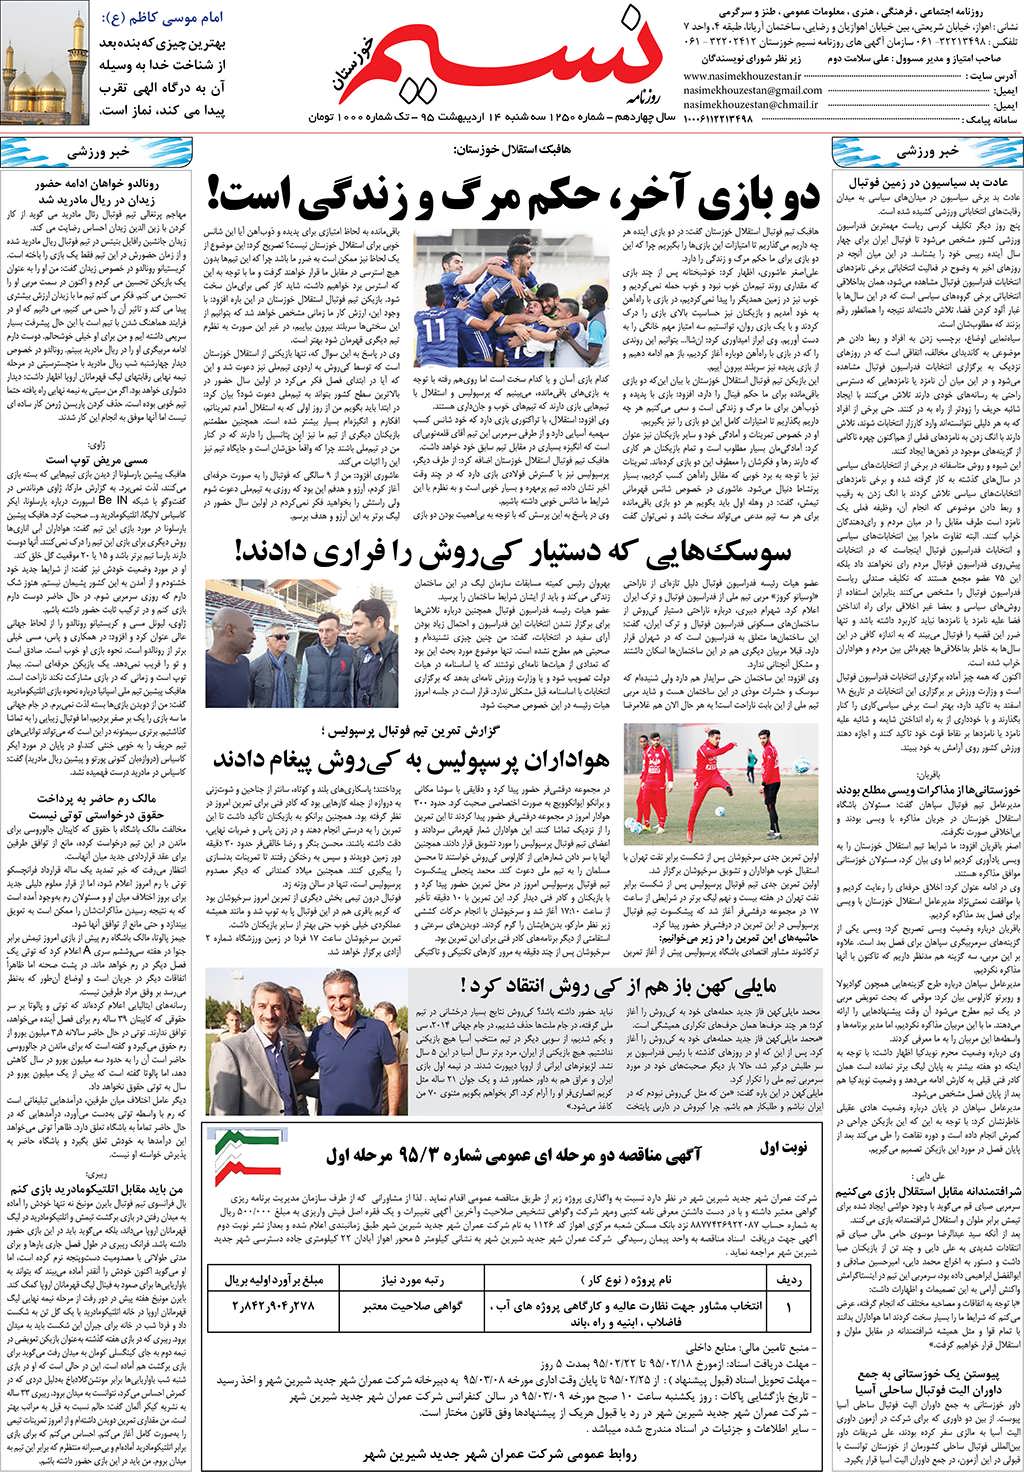 صفحه آخر روزنامه نسیم شماره 1250